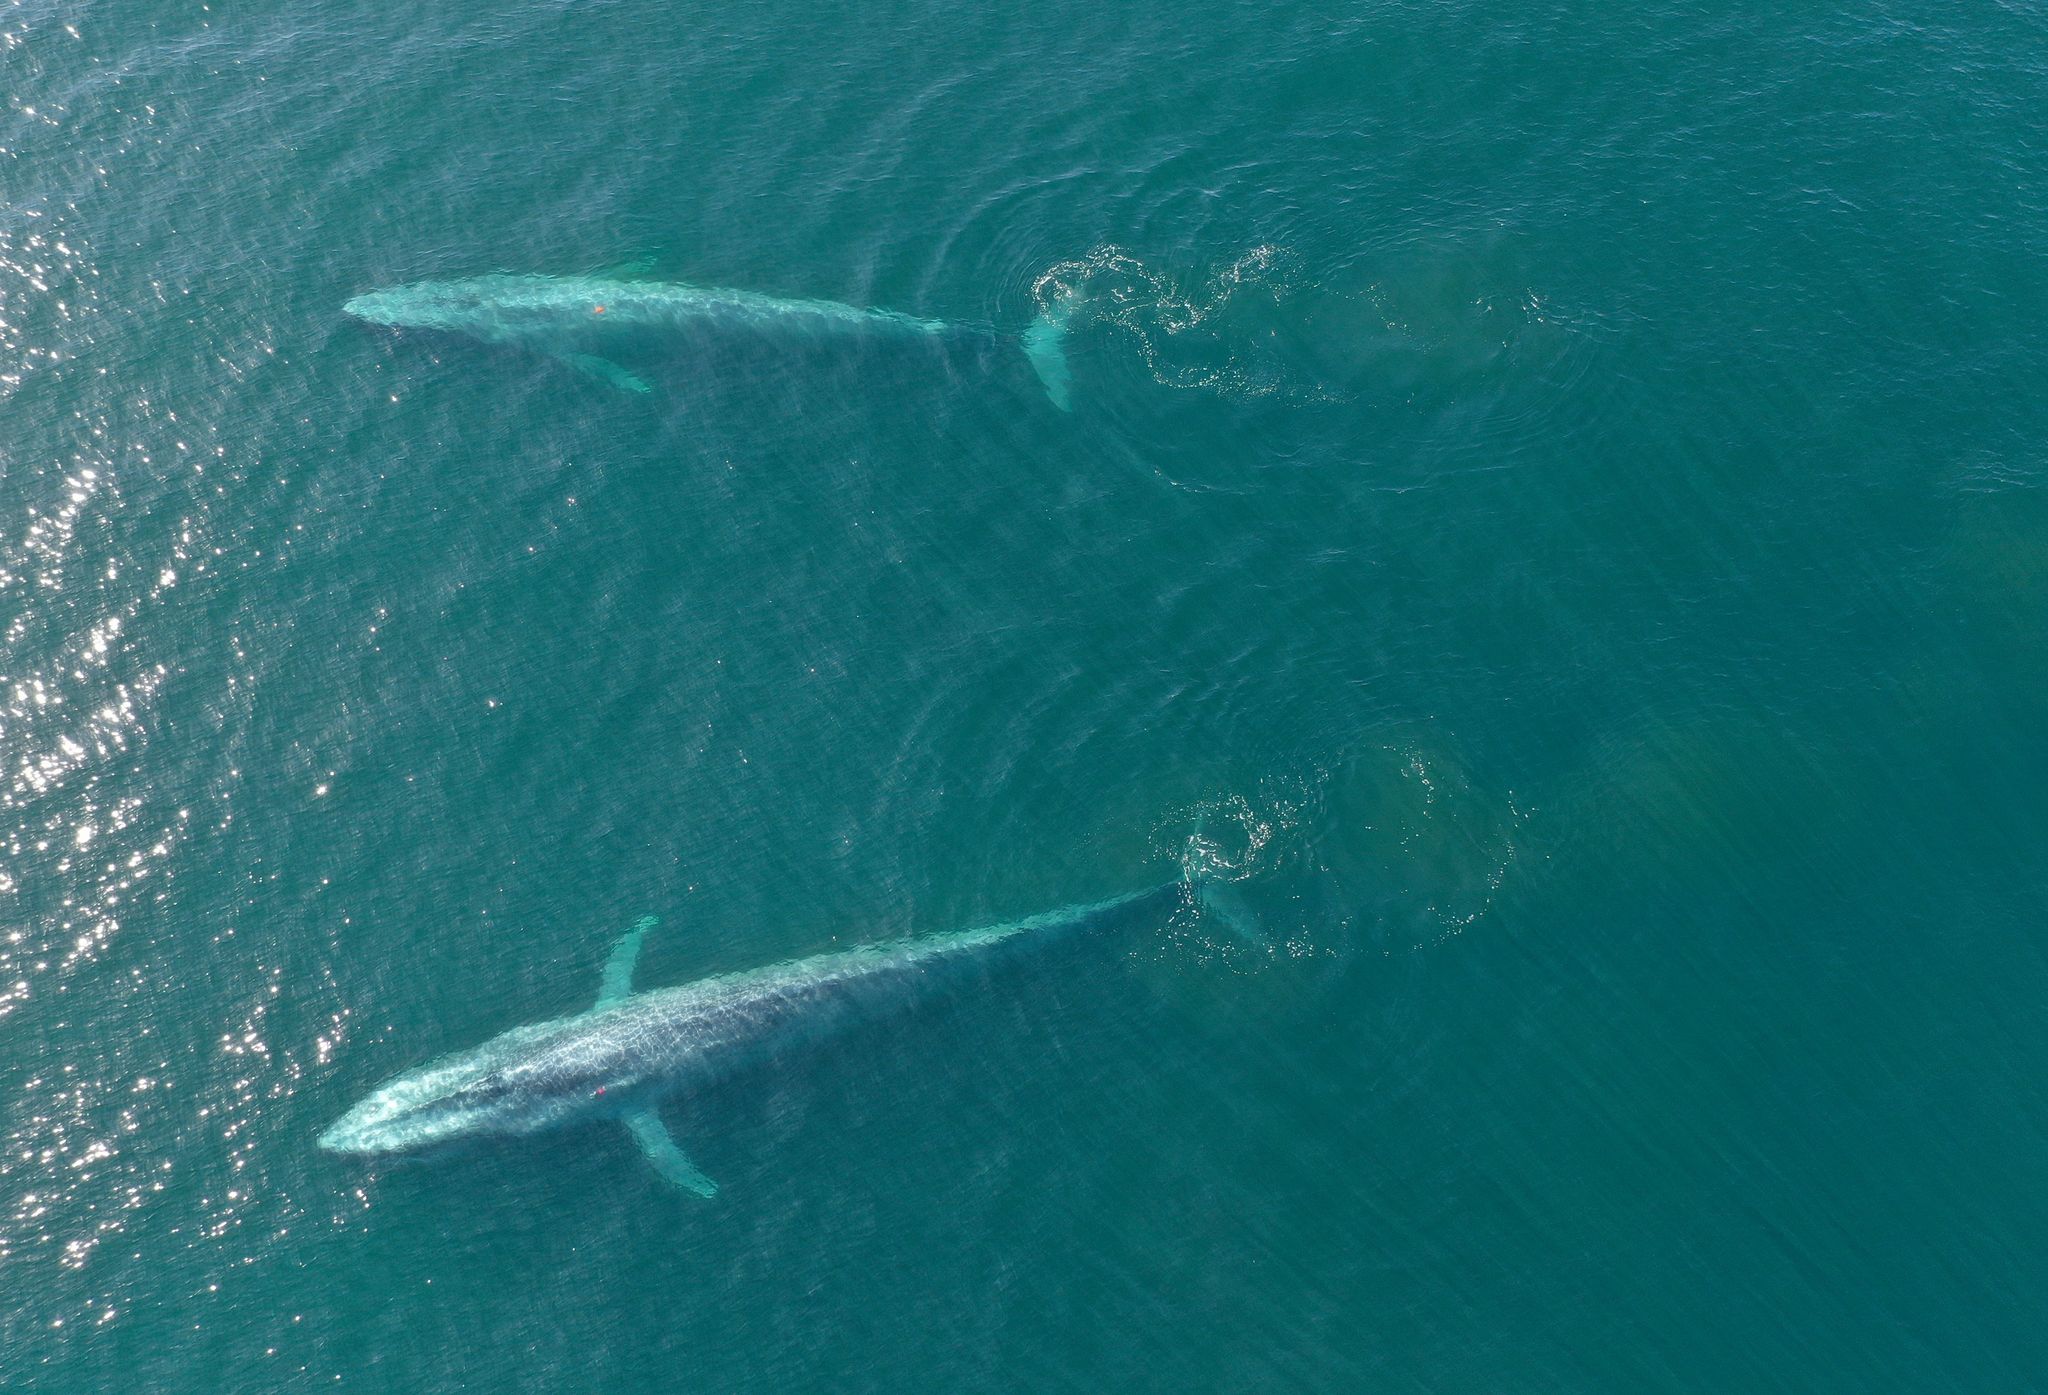 Blauwale, die größten Tiere der Erde, die sich hauptsächlich von Krill ernähren, könnten laut einer Schätzung mit der Nahrung täglich rund zehn Millionen Mikroplastikteile aufnehmen.